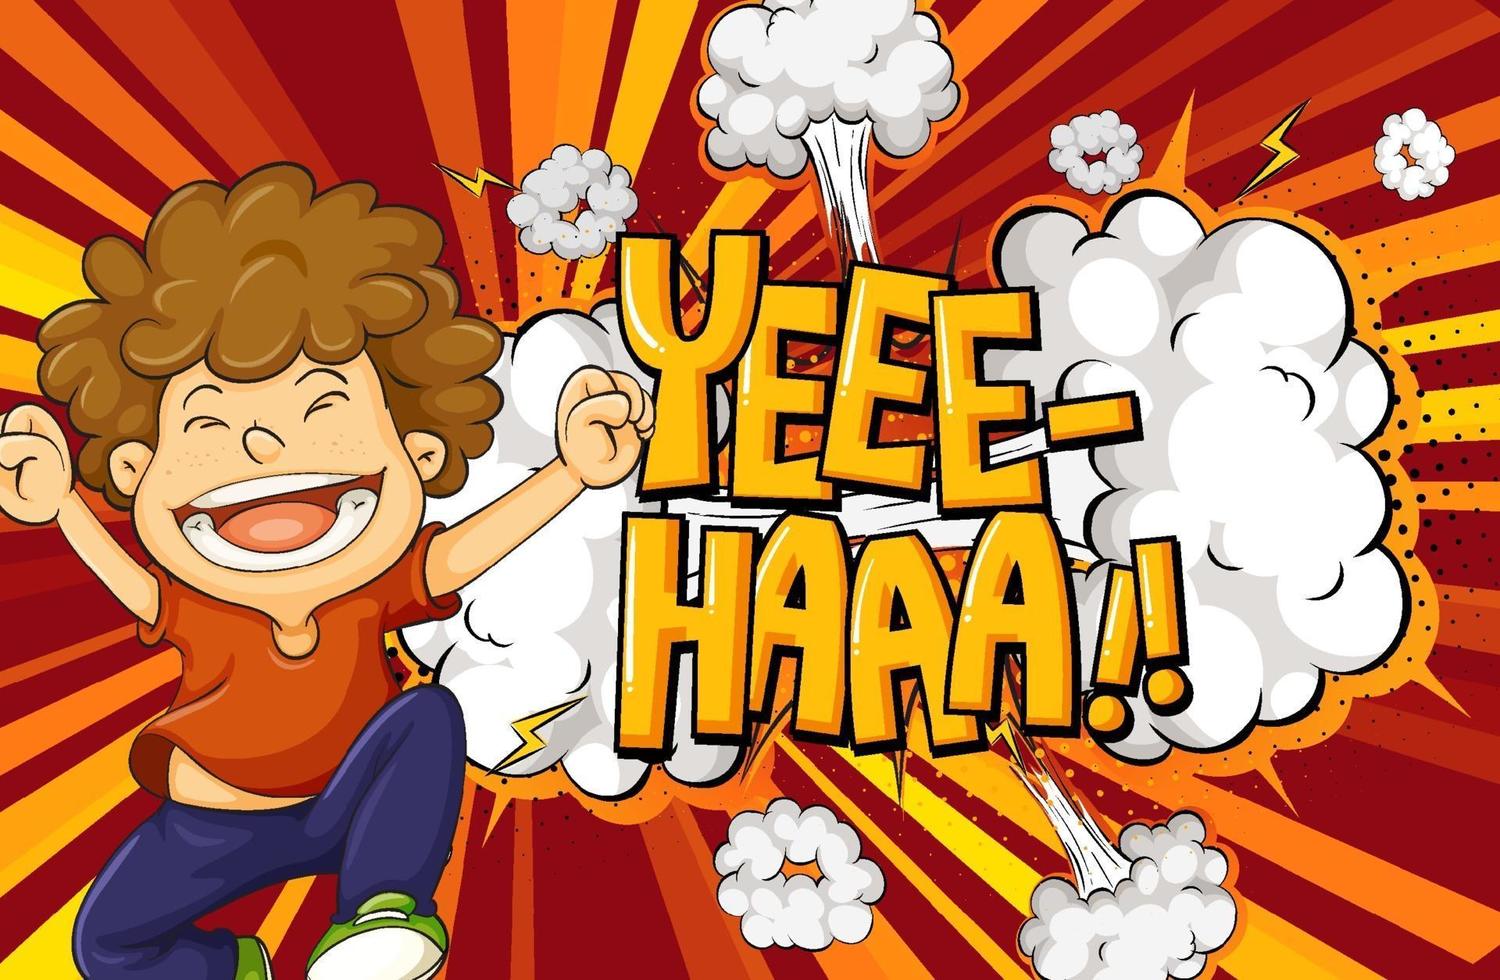 yeee-haa palavra sobre fundo de explosão com personagem de desenho animado de menino vetor